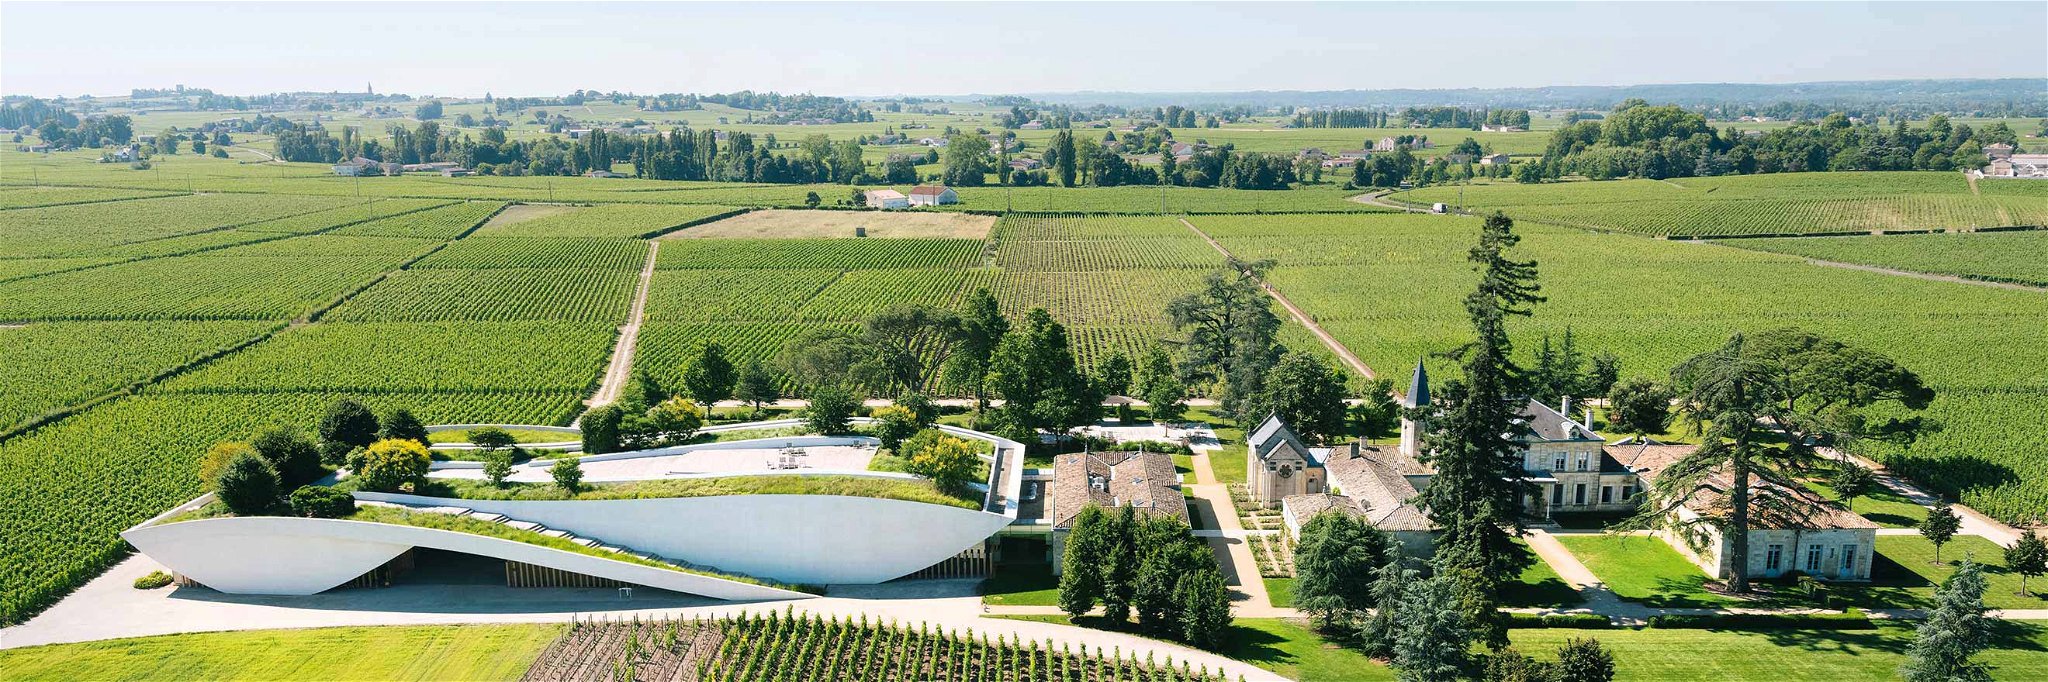 Das renommierte Weingut Cheval Blanc in Bordeaux